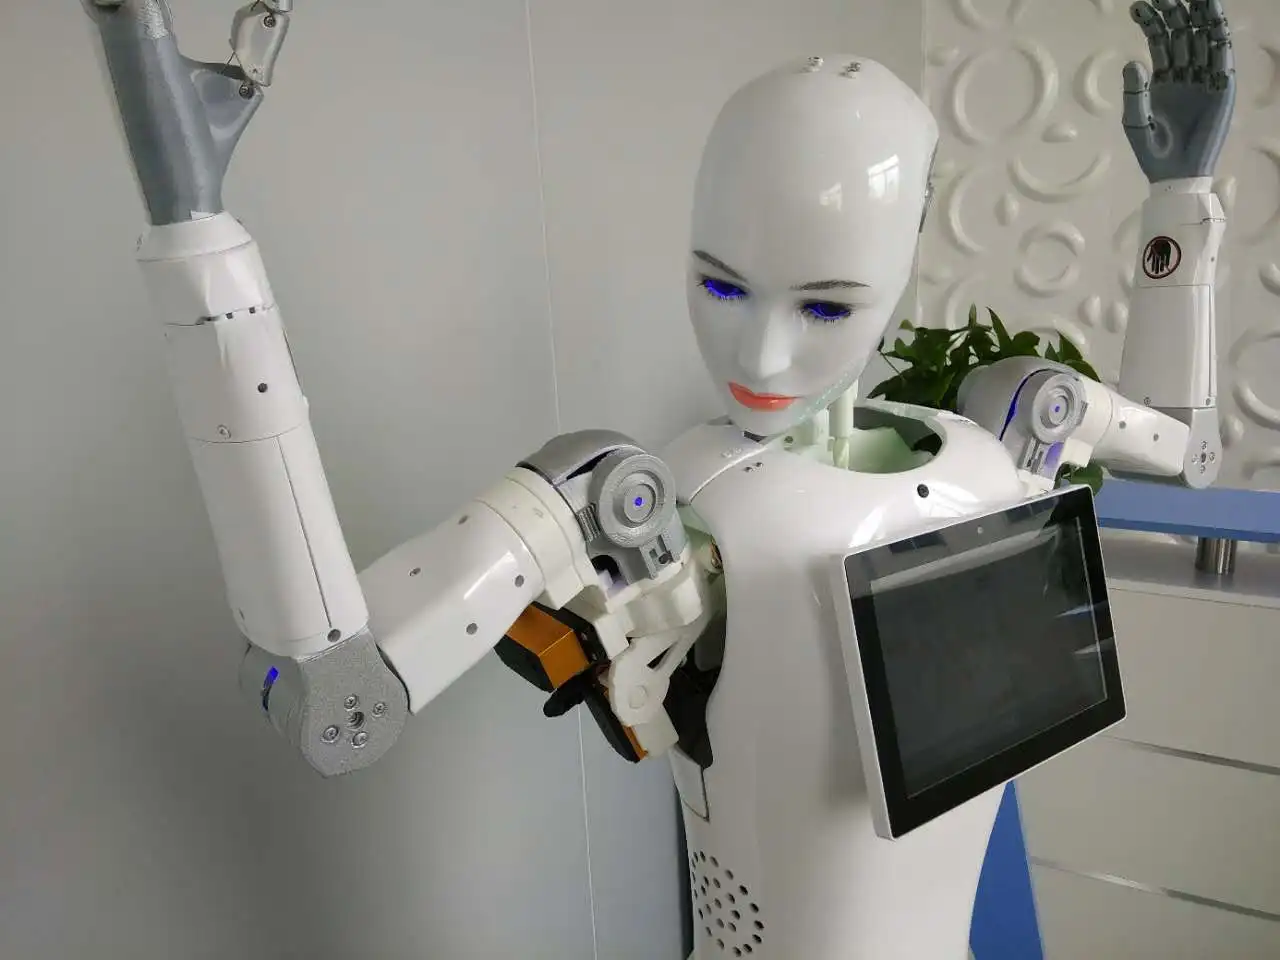 Робот развивающий проект умный аэропорт приветственный робот, высококачественный сервисно-ориентированный приветственный робот